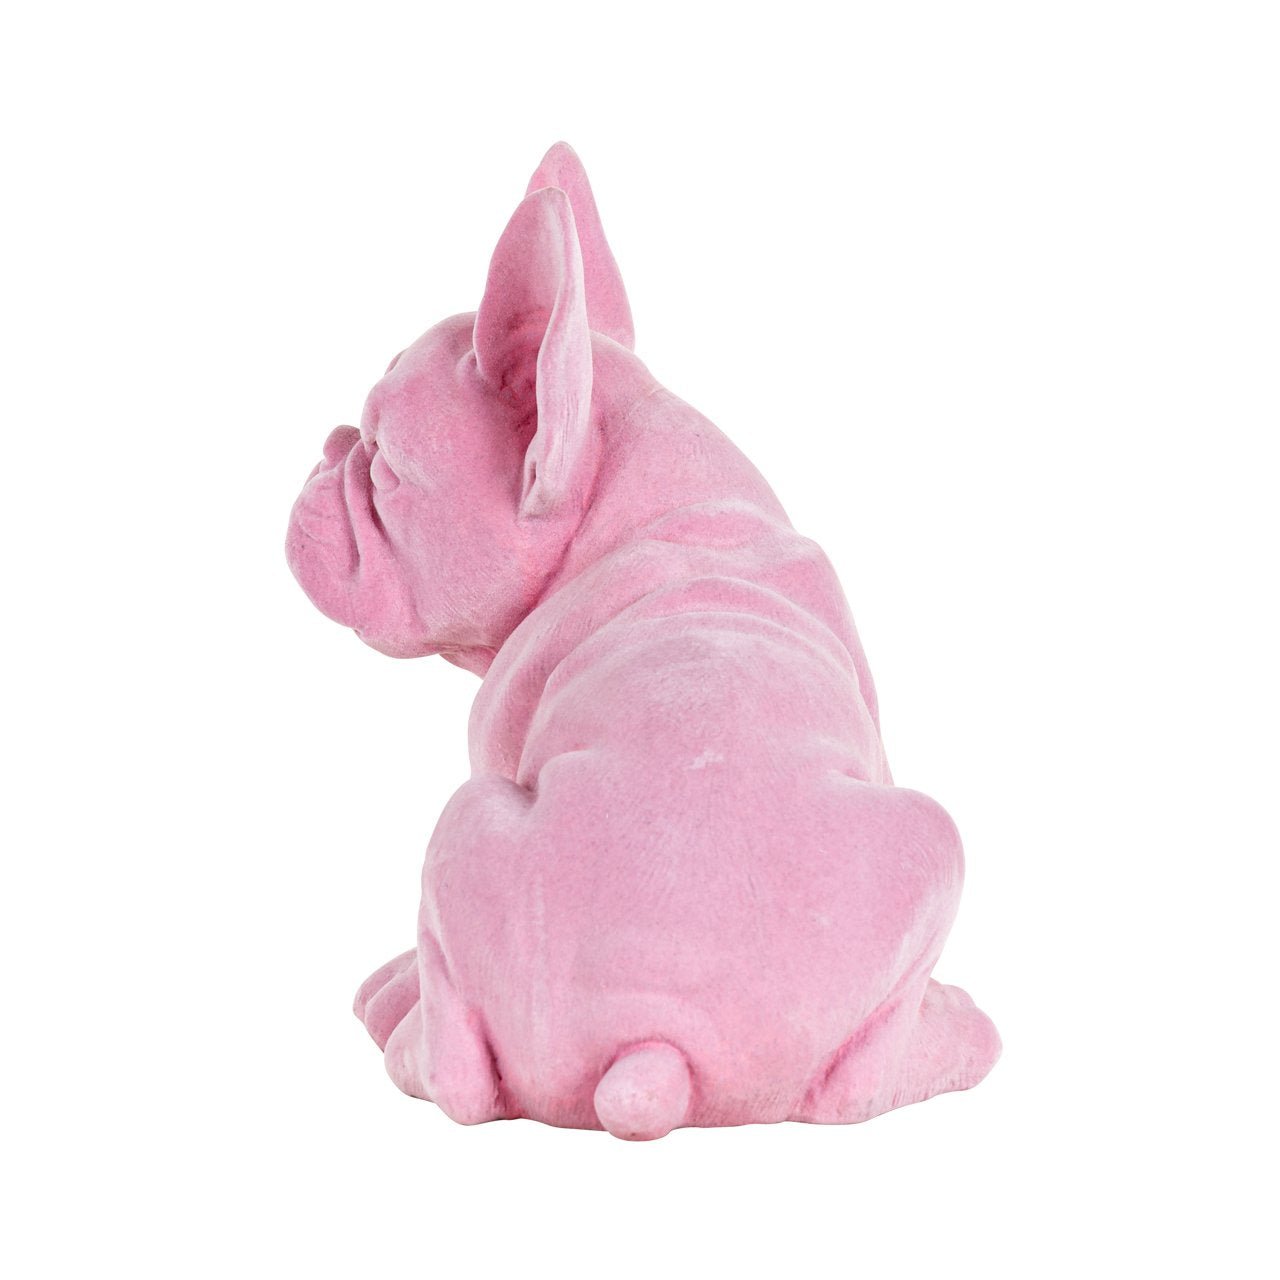 Achteraanzicht van het roze fluweelachtige frenchie pup beldje